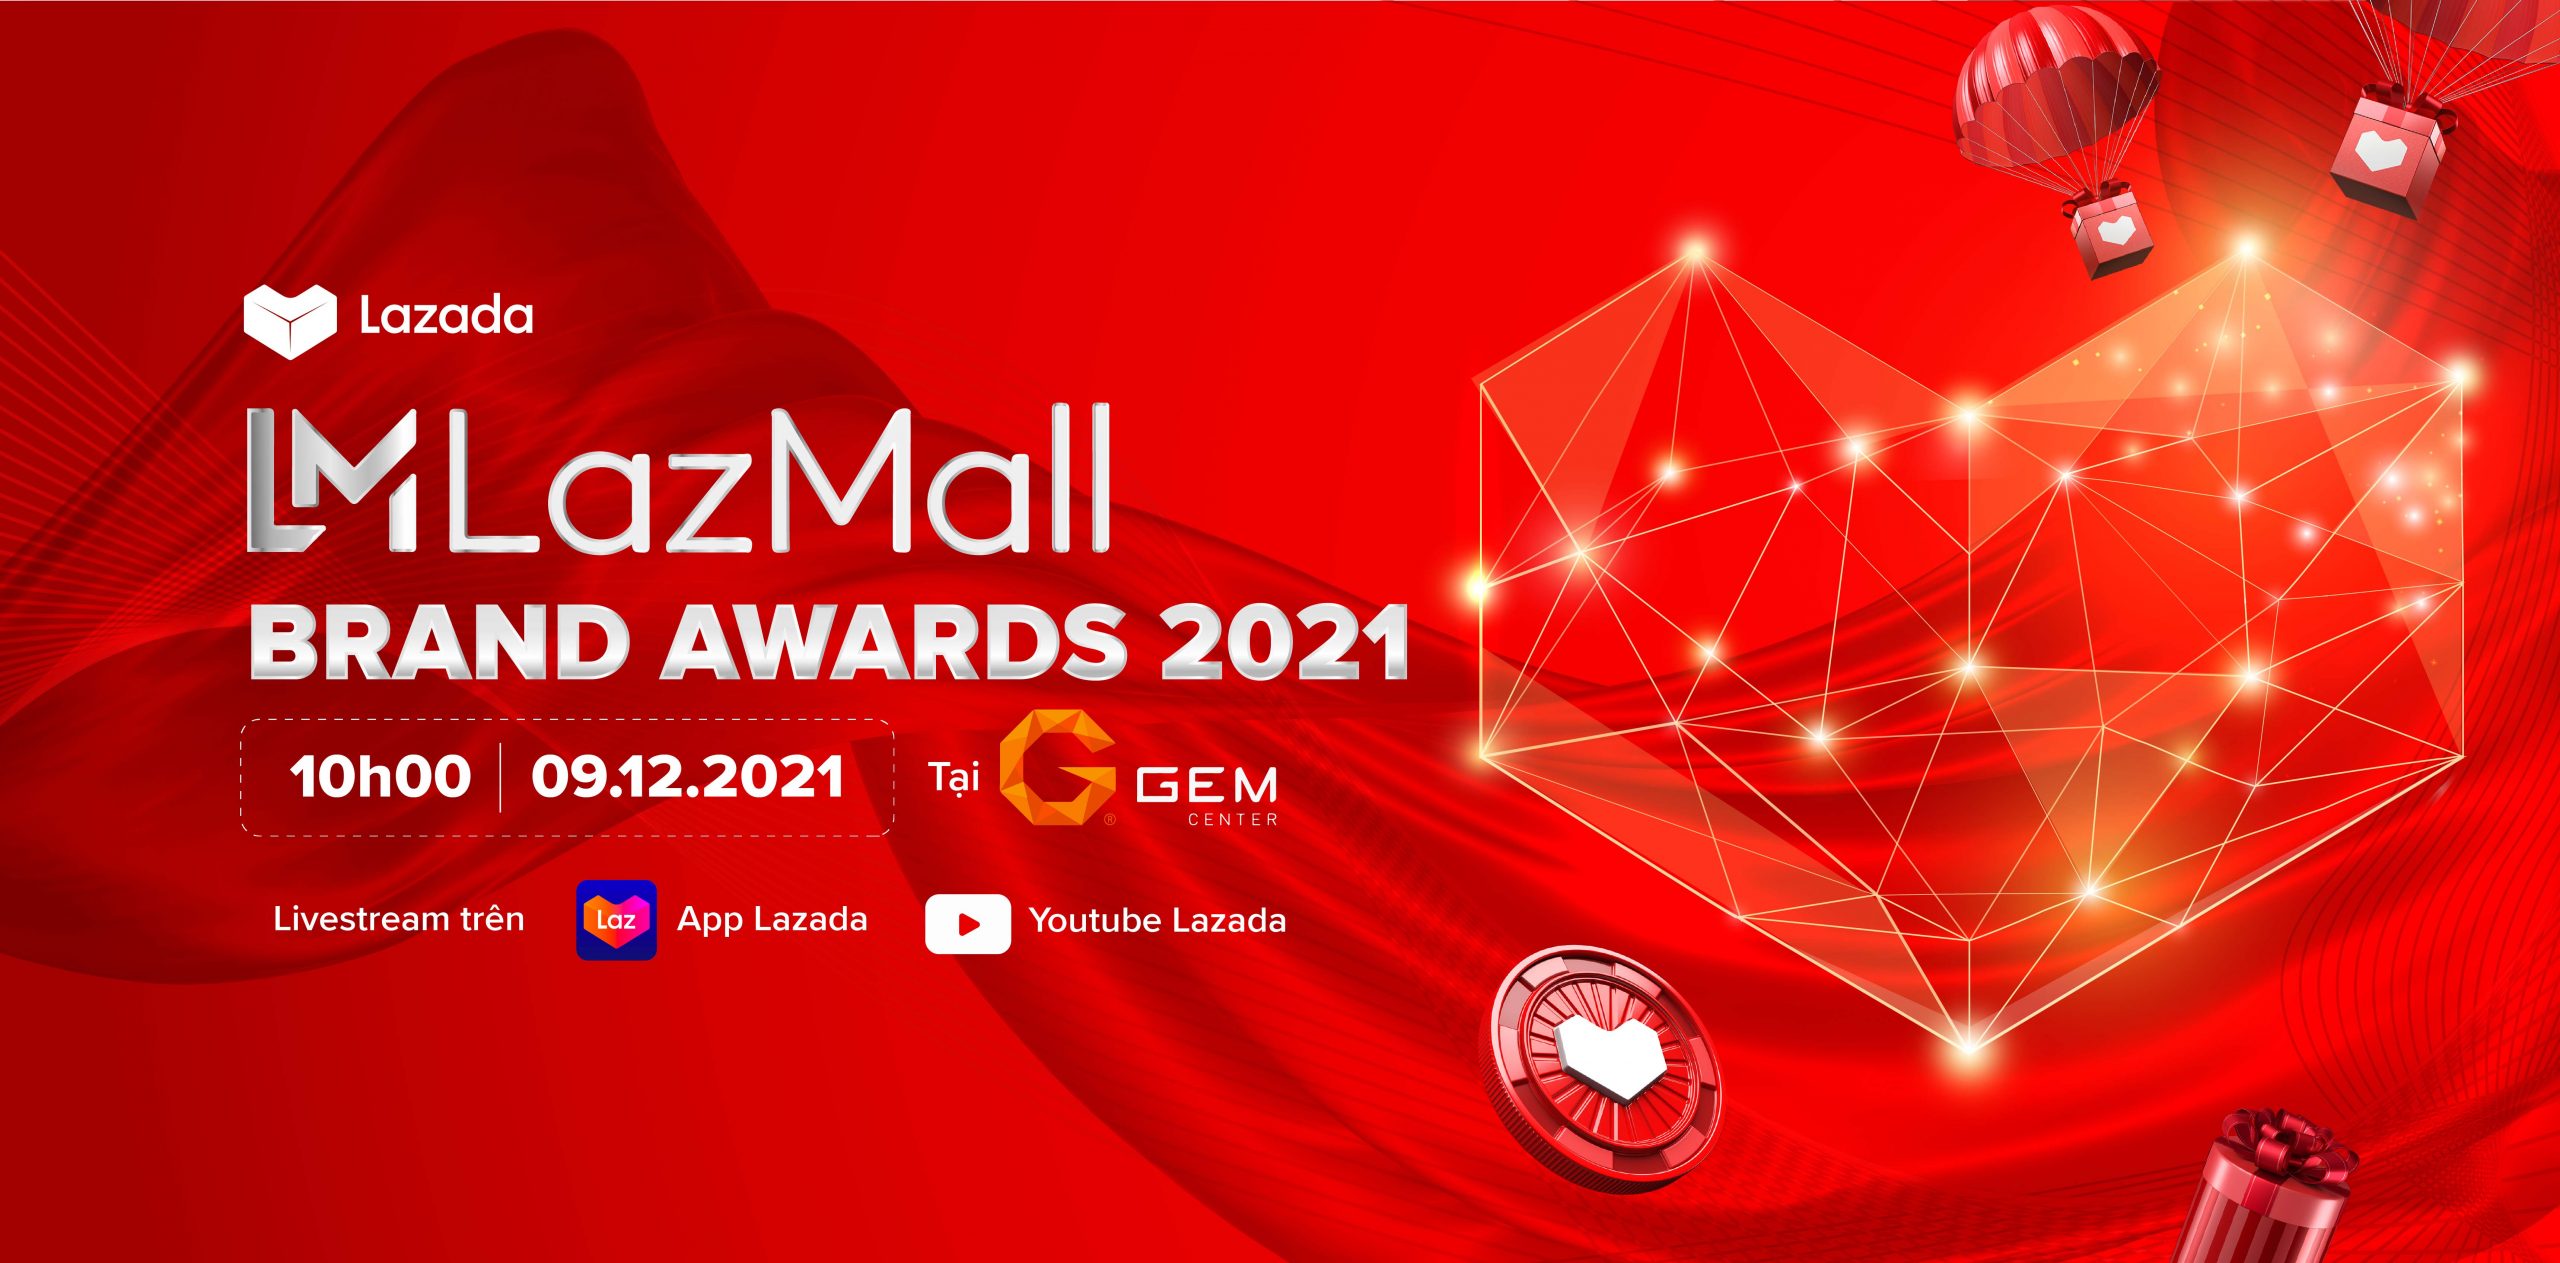 Lazada công bố giải thưởng LazMall Brand Awards, vinh danh thương hiệu phát triển bền vững năm 2021